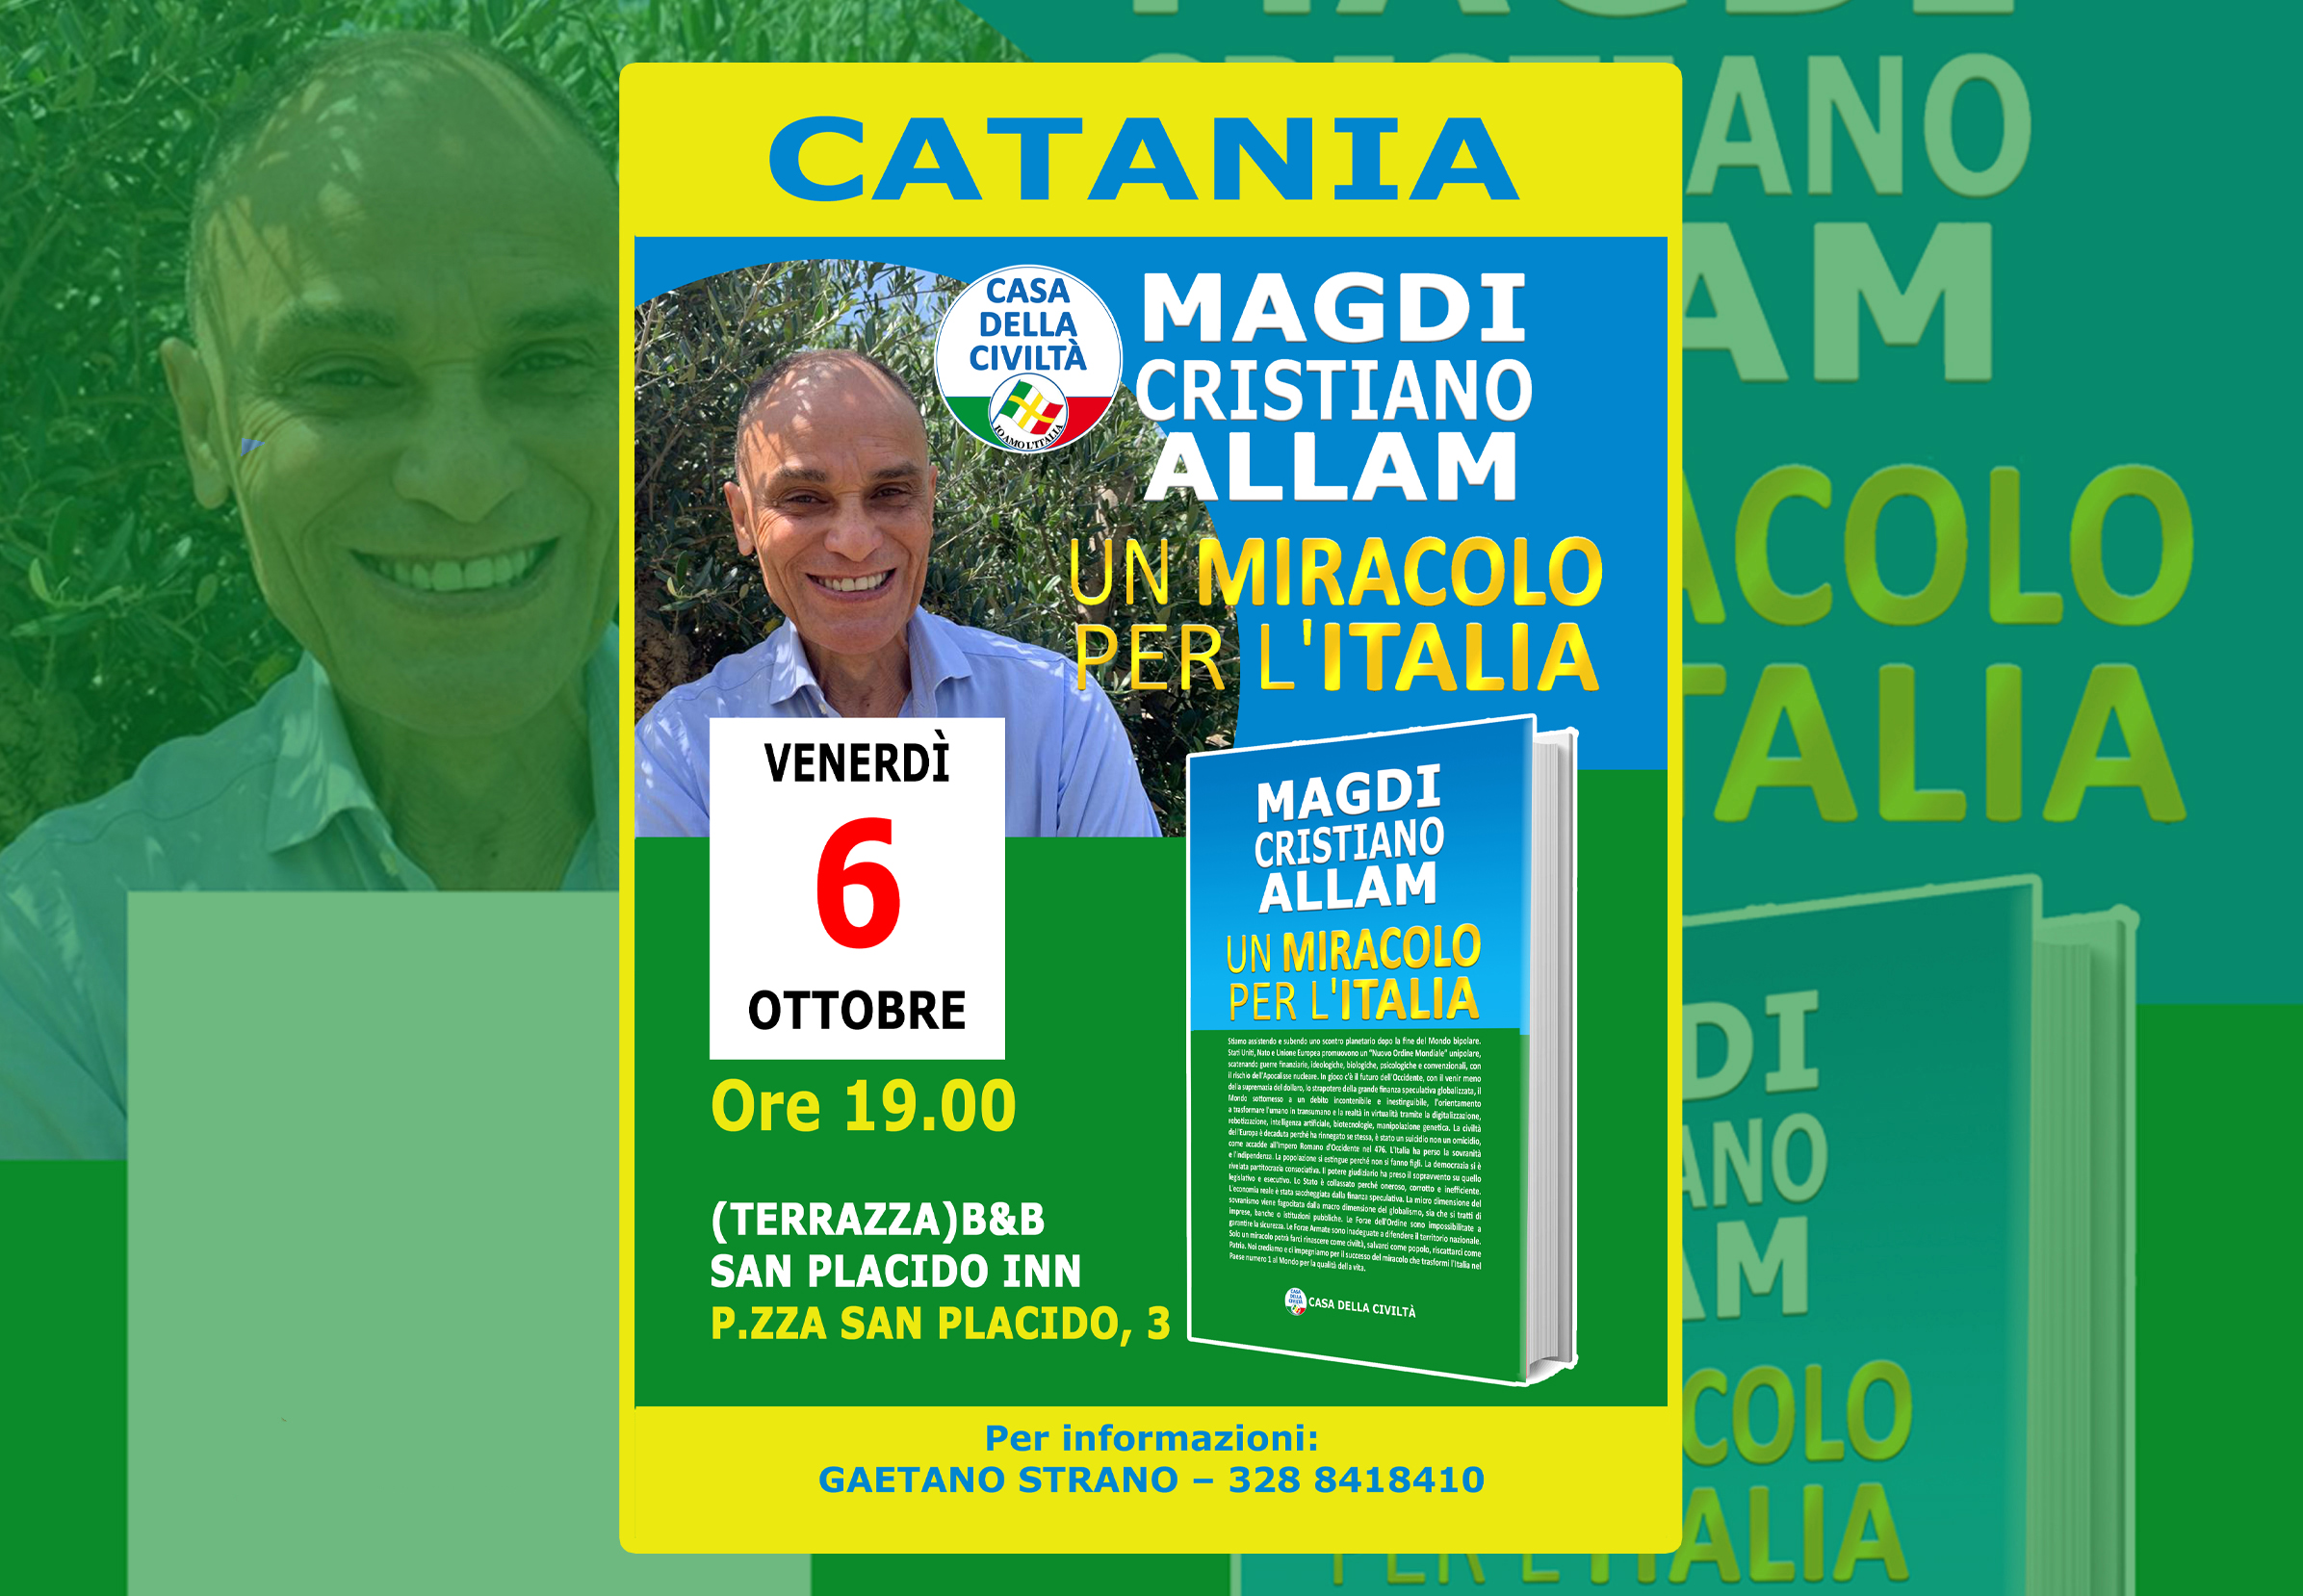 Venerdì 6 ottobre– ore 19.00 – Presentazione “UN MIRACOLO PER L’ITALIA” a CATANIA